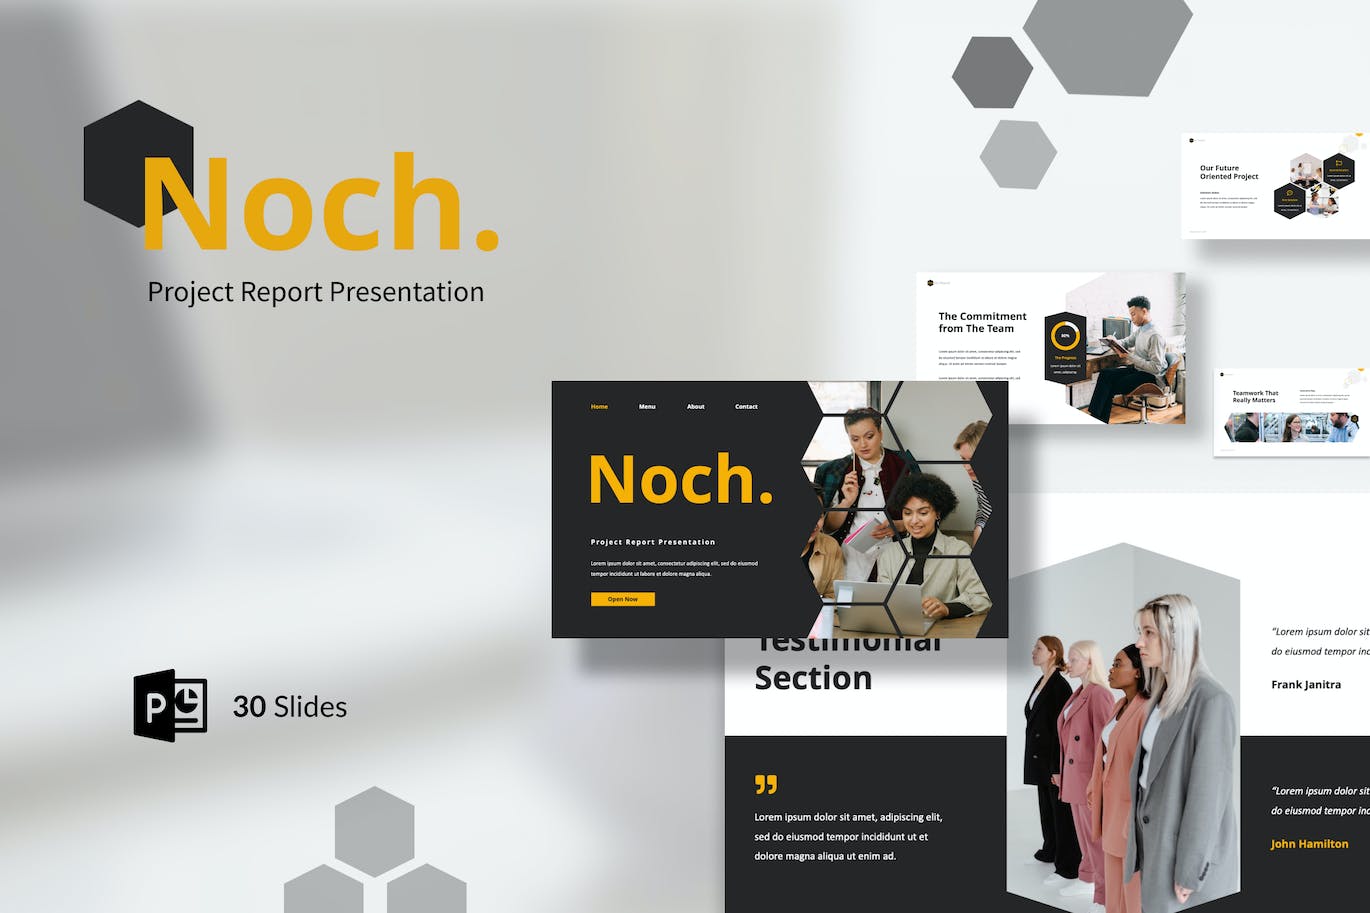 项目报告PPT演示幻灯片模板 Noch – Project Report Presentation PowerPoint 幻灯图表 第1张